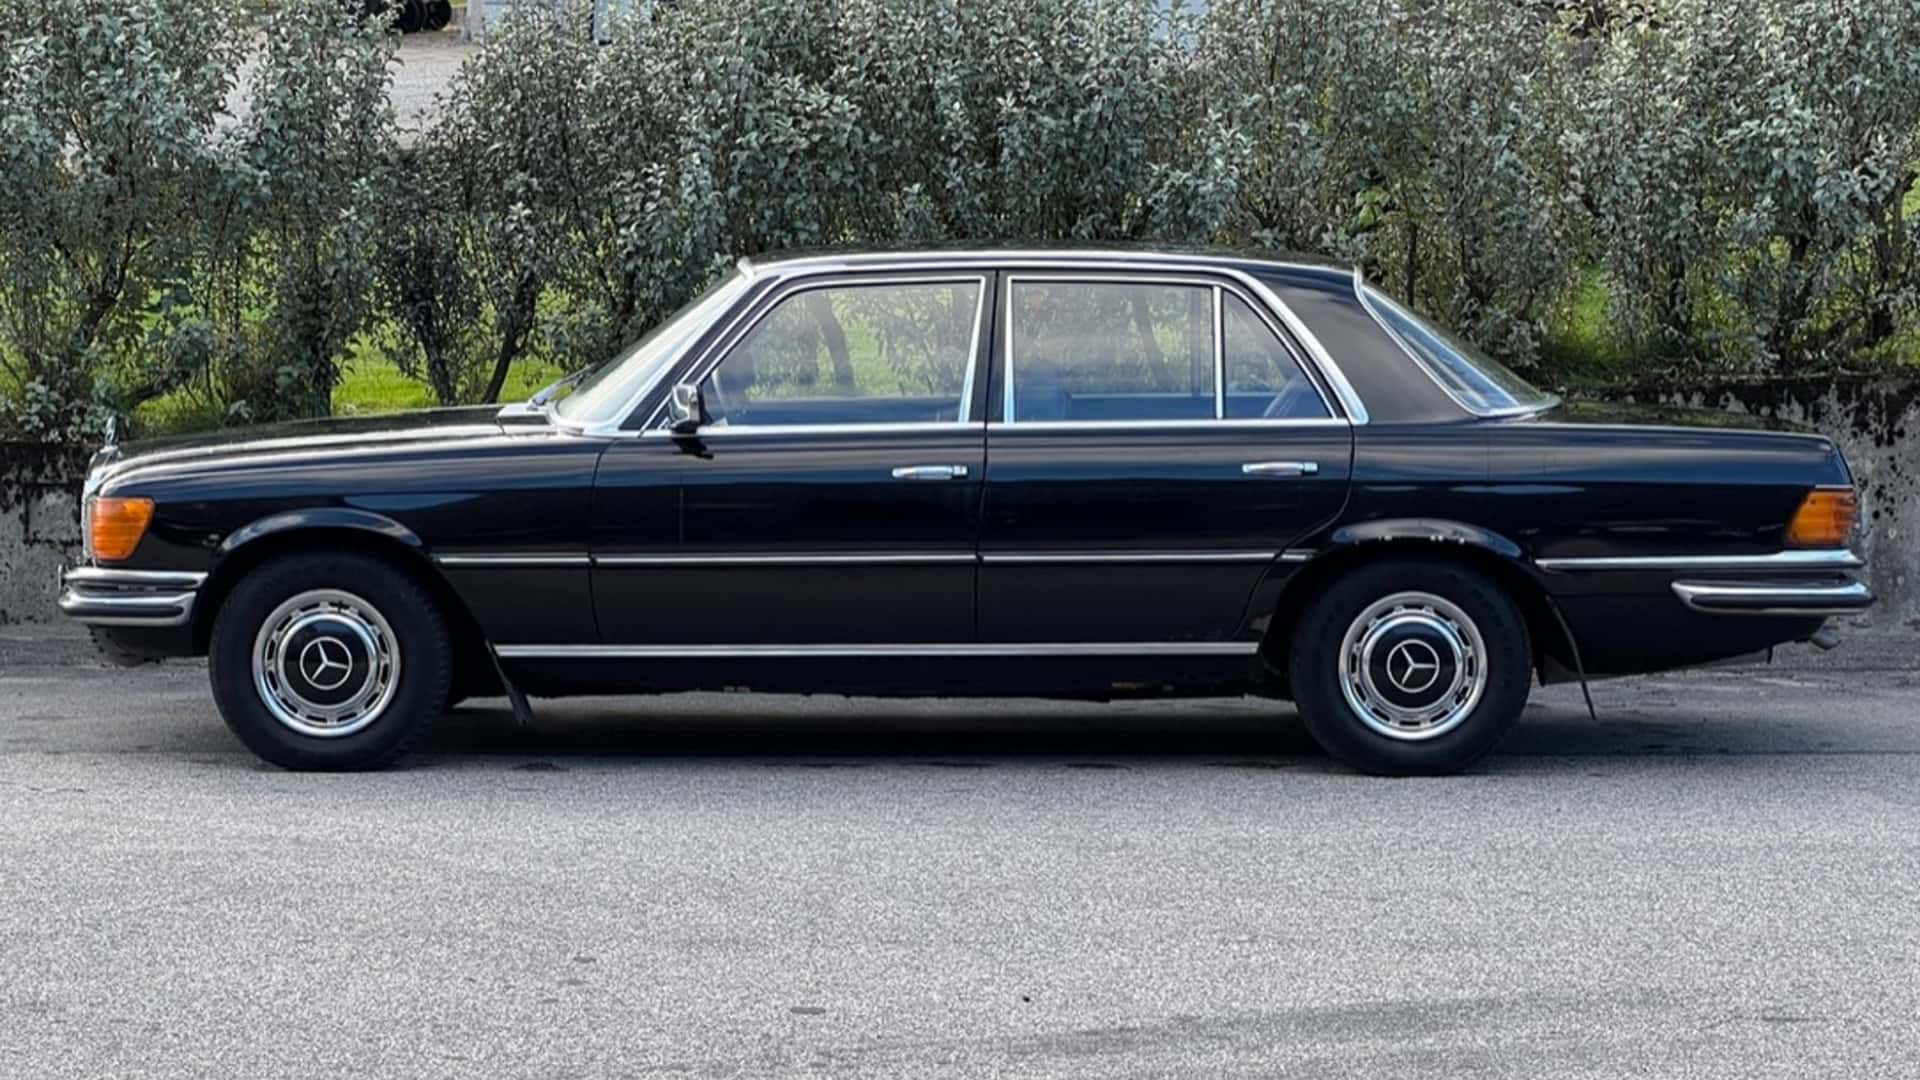 سيارة مرسيدس اس كلاس 1973 كانت مملوكة لملك السويد معروضة للبيع في مزاد 2